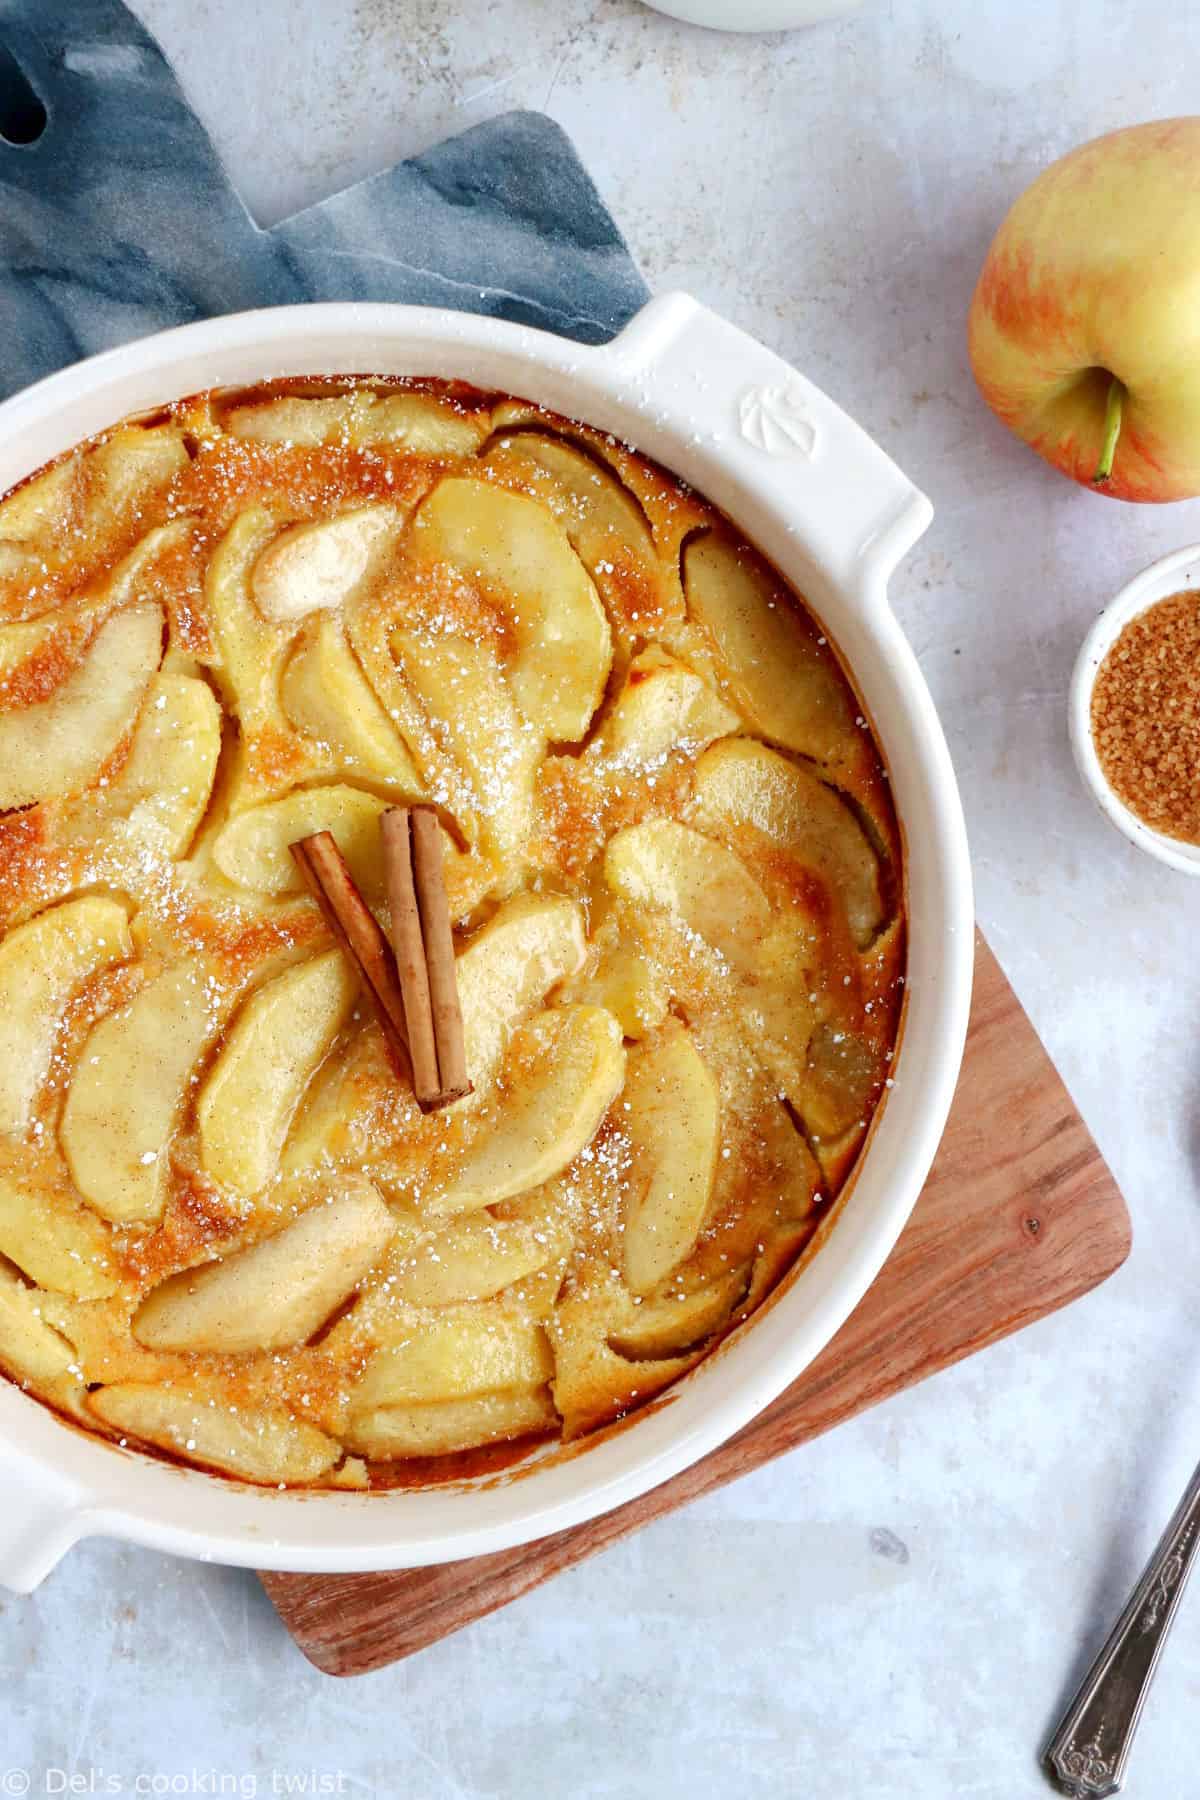 Le clafoutis aux pommes, c'est le dessert simplissime par excellence. Une recette impossible à râter, réalisée avec des ingrédients de base, et qui ne laisse pourtant personne indifférent.